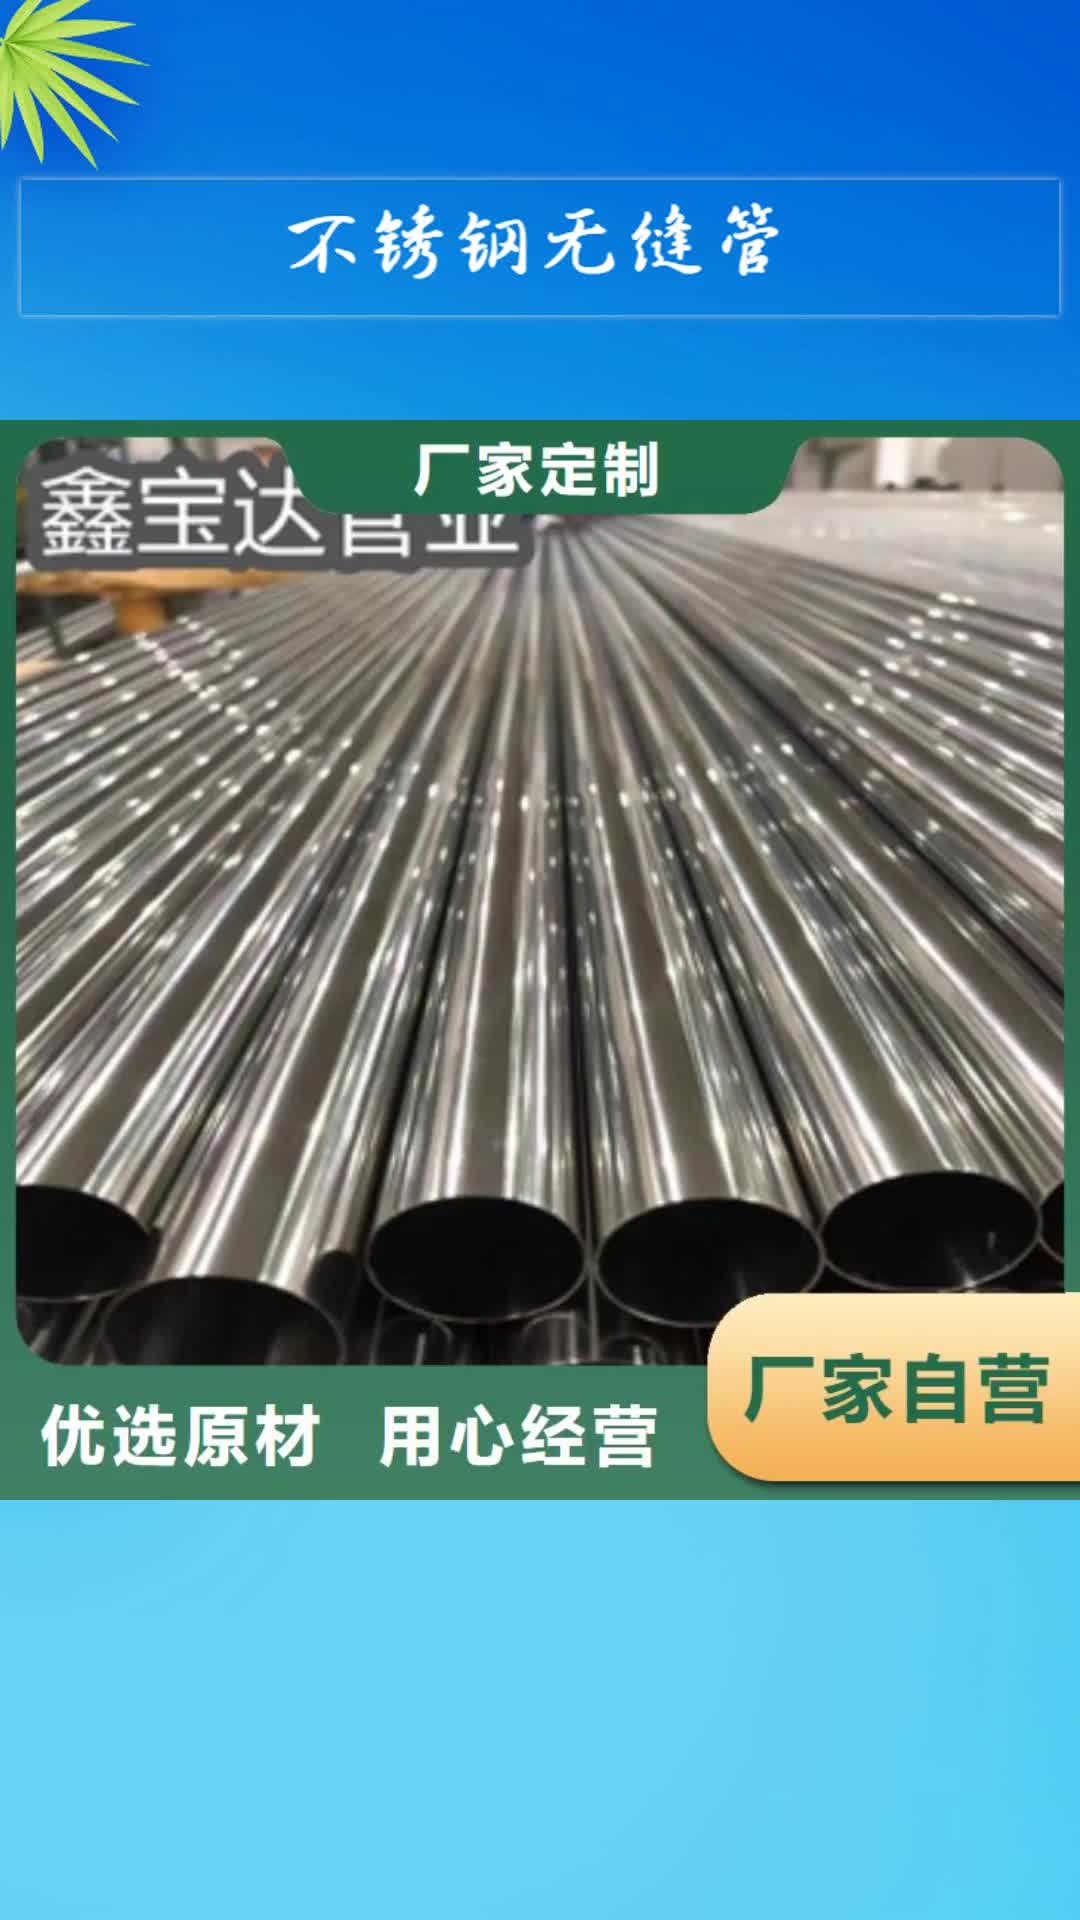 黄南【不锈钢无缝管】-小口径焊管分类和特点